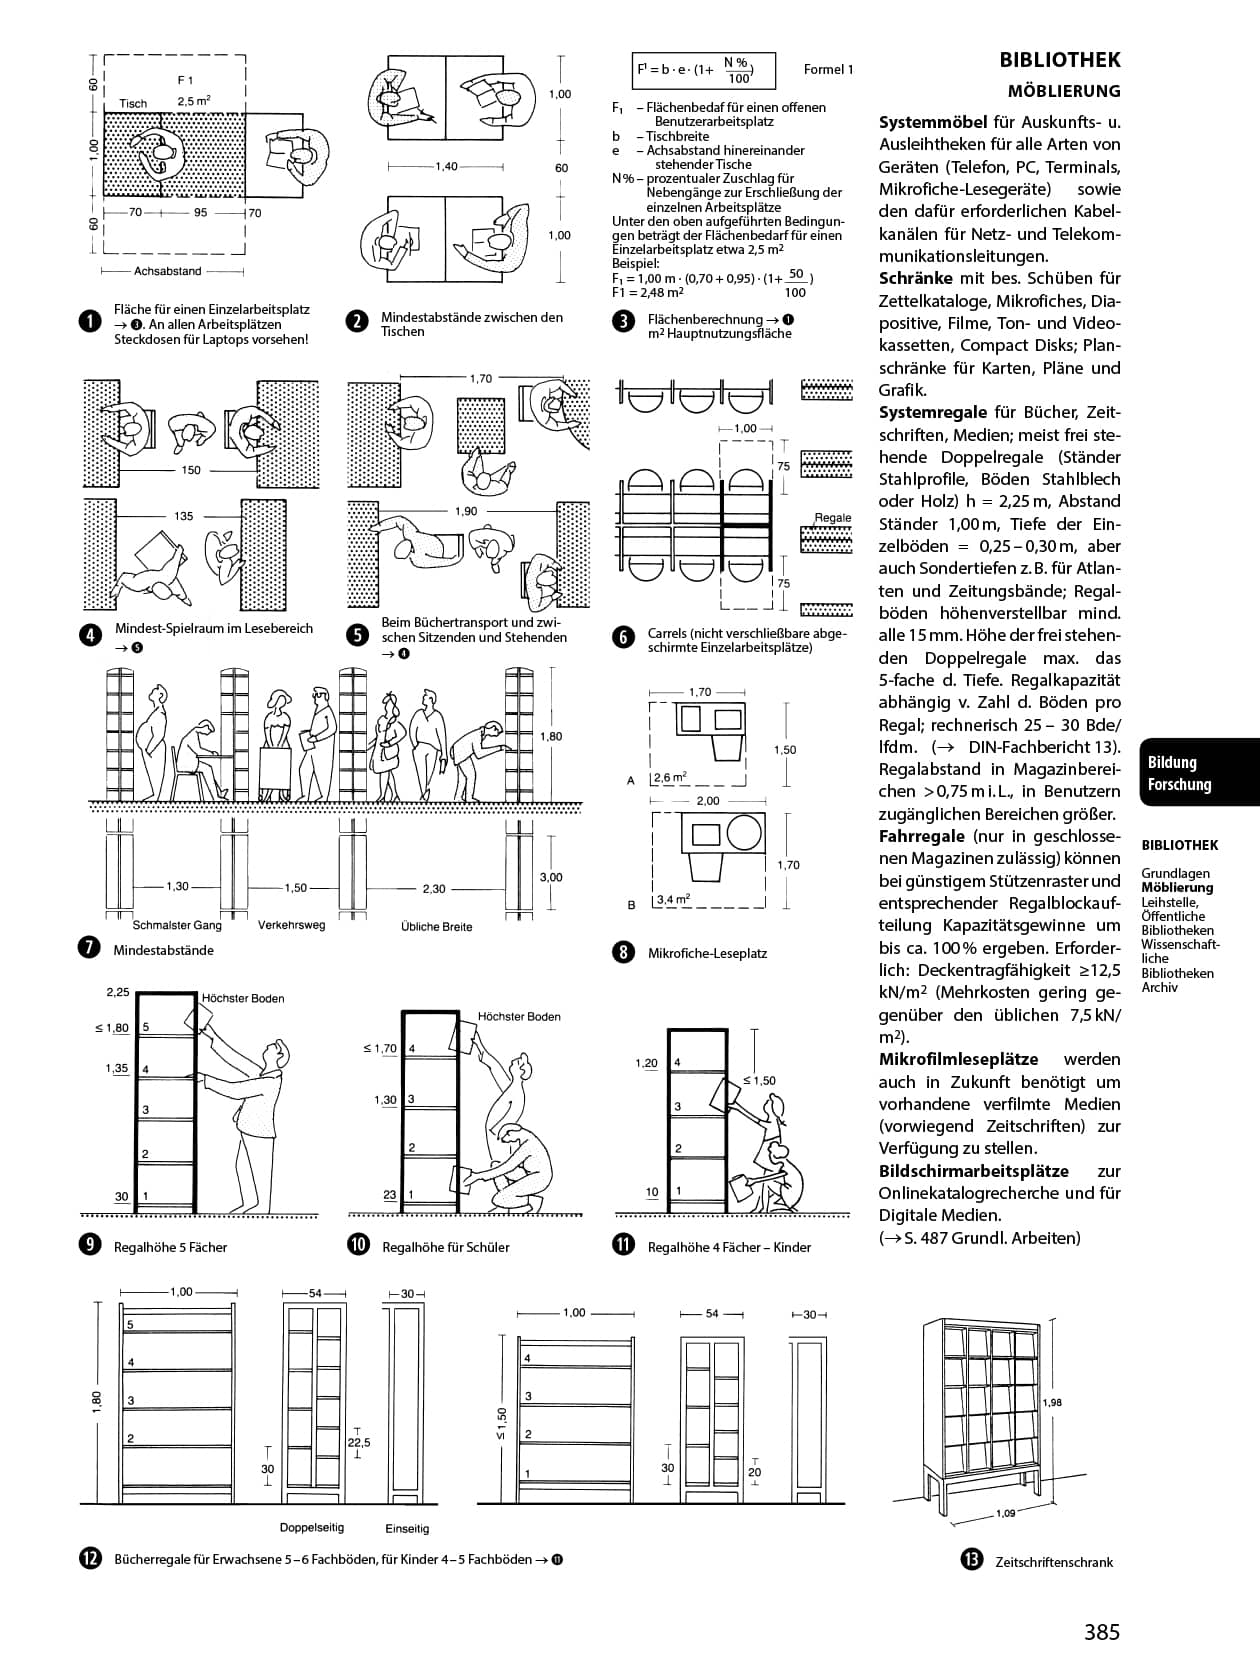 Bauentwurfslehre, 42nd edition, Library